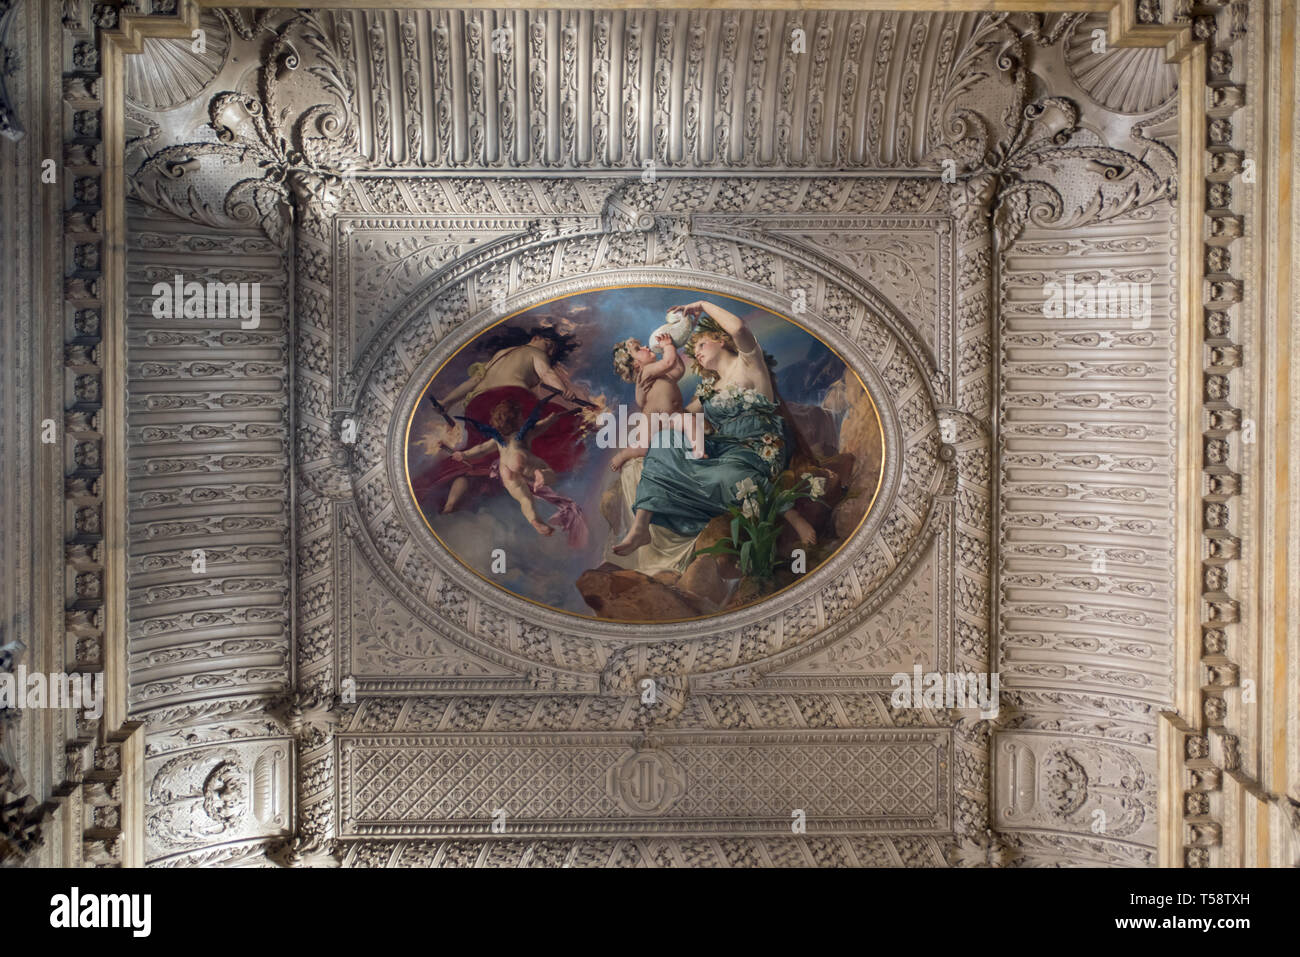 Julius Kronberg el plafond representando Aurora, diosa del alba, la superación de la Luna, diosa de la noche, en el oeste de la escalinata del Palacio Real de Estocolmo Foto de stock